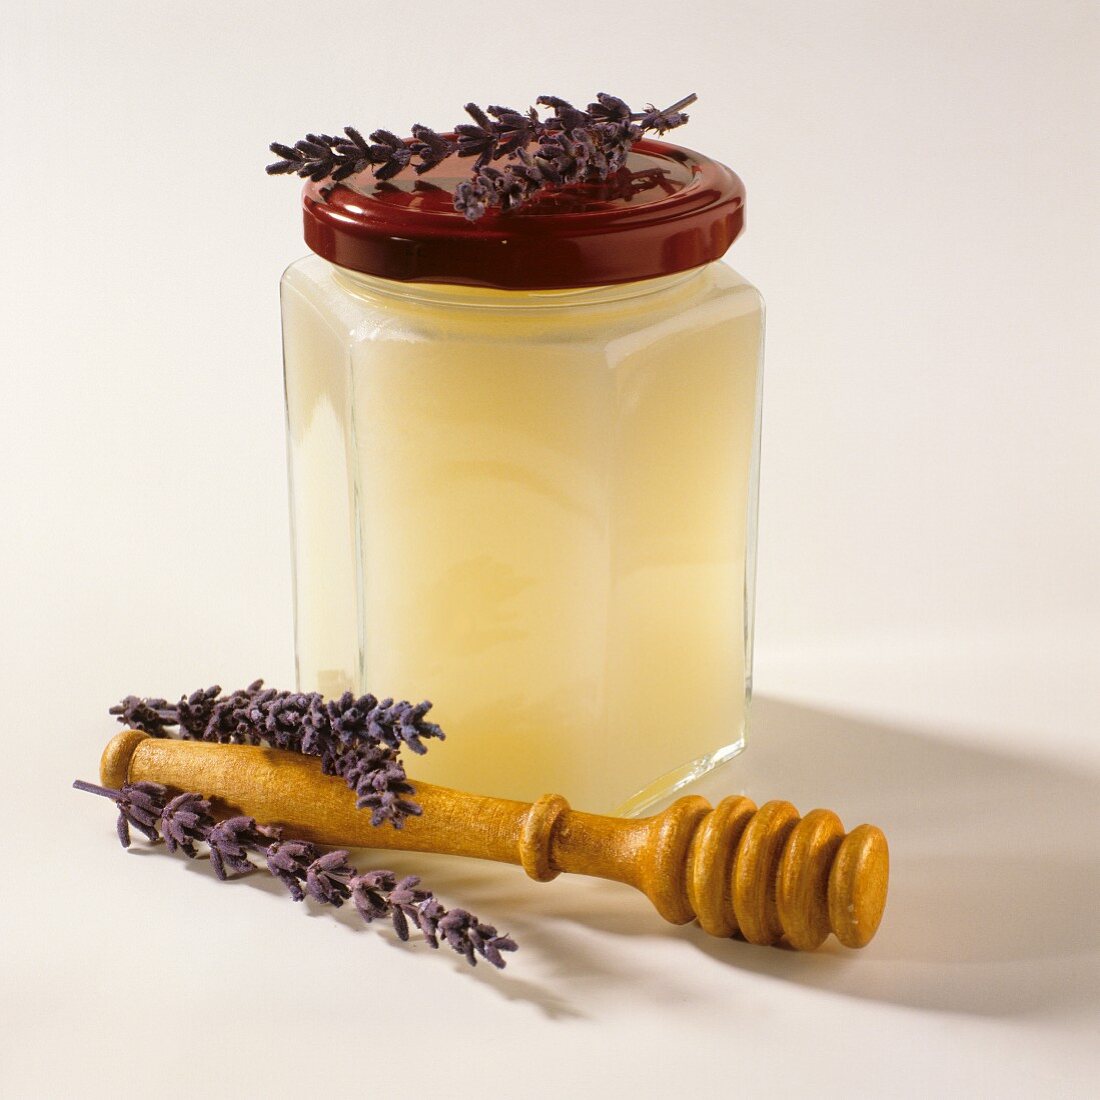 Lavender honey in glass, honey server in front